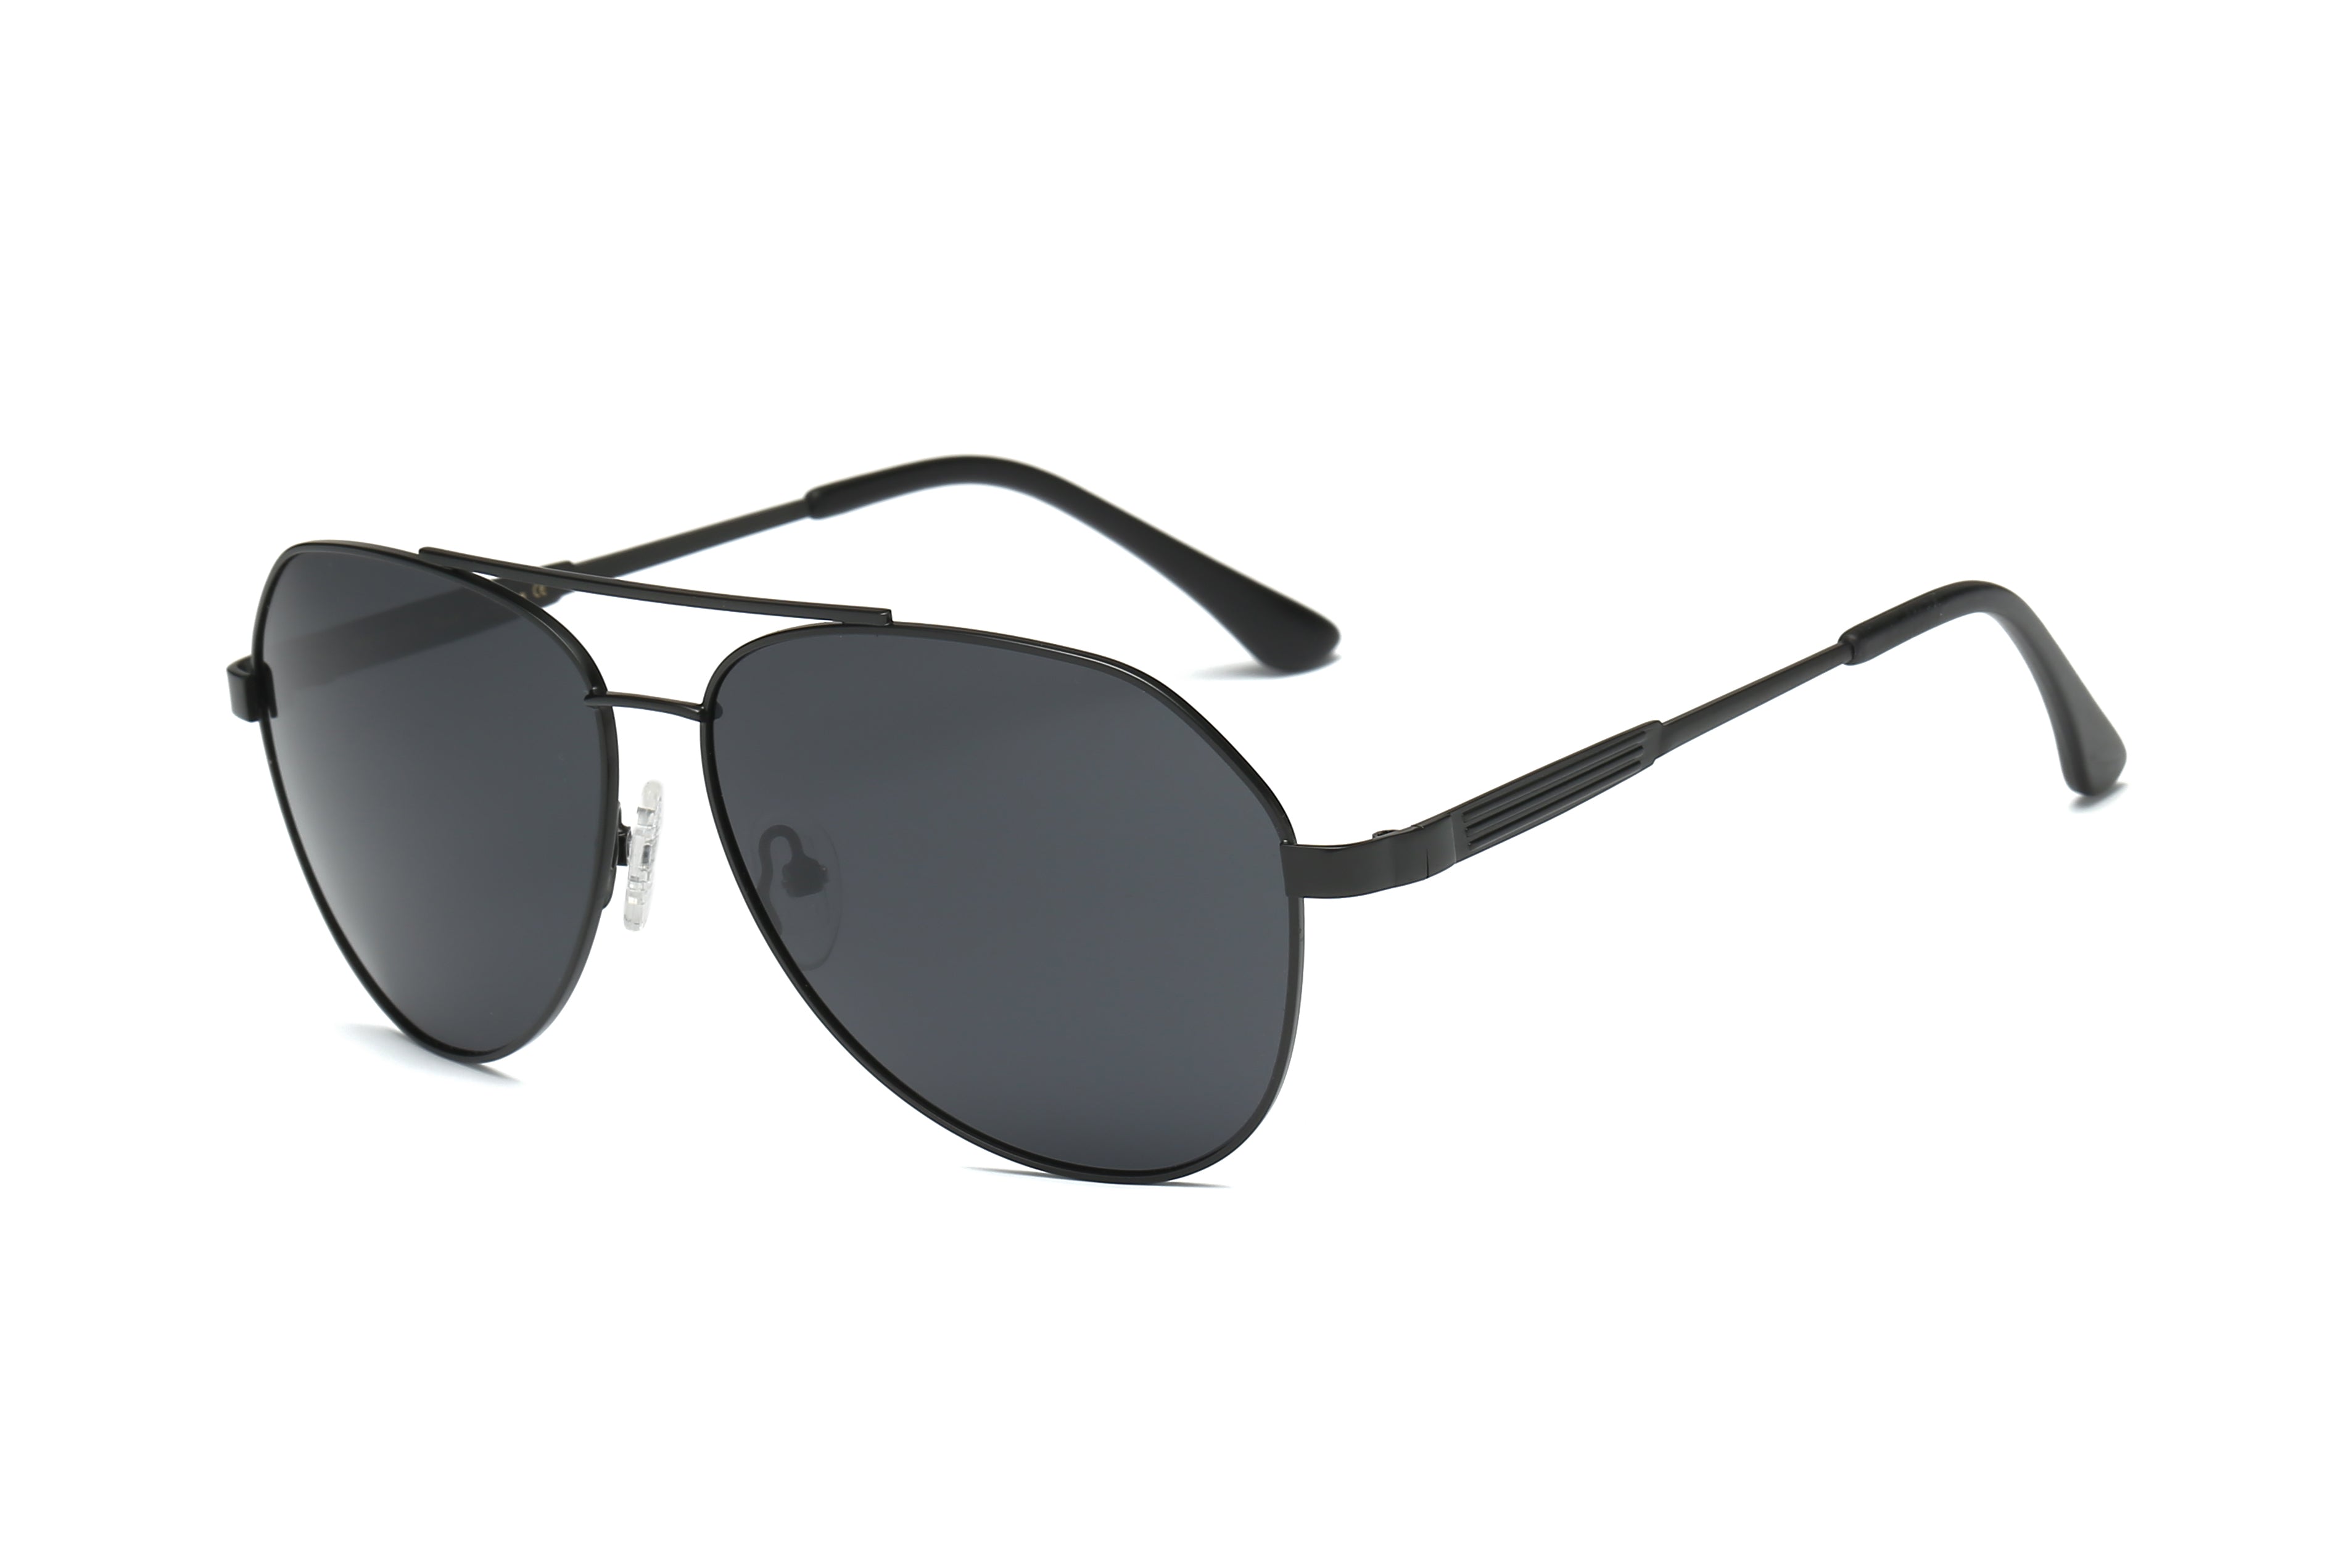 P4002 - Classic Polarized Aviator Fashion Sunglasses - Iris Fashion Inc. | Wholesale Sunglasses and Glasses